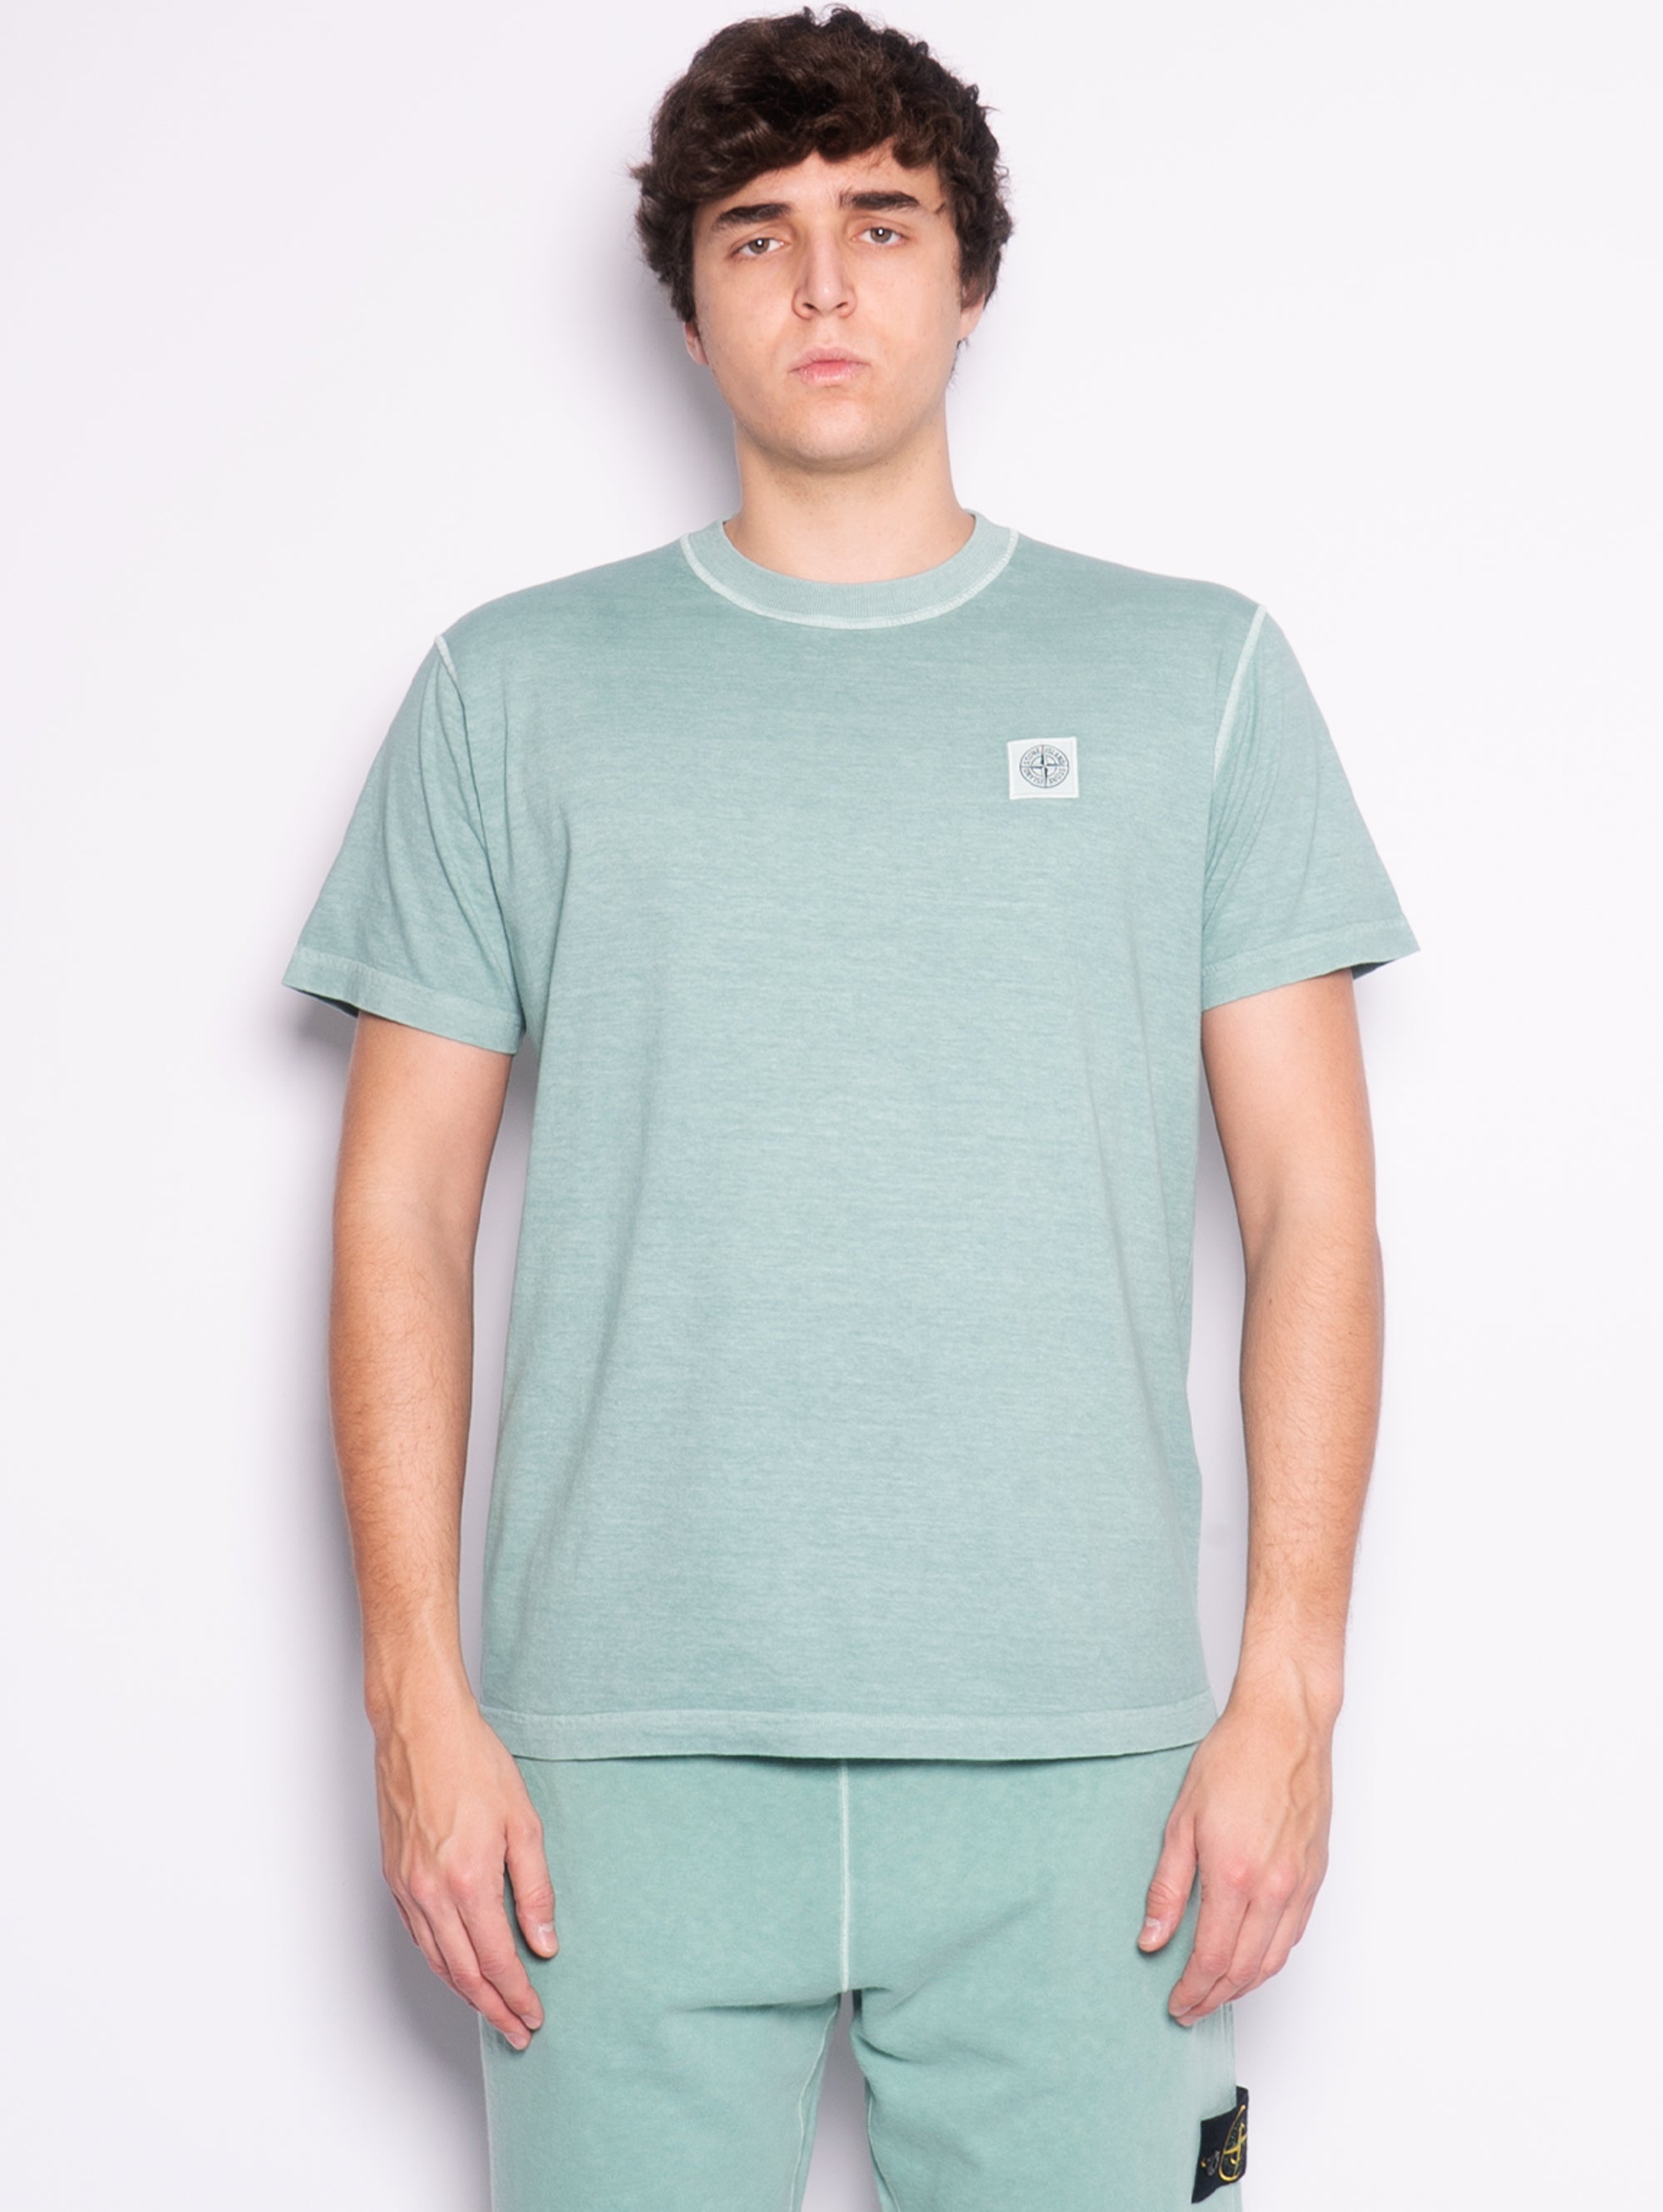 STONE ISLAND-T-shirt Tinta in Capo con Effetto Fissato Verde-TRYME Shop